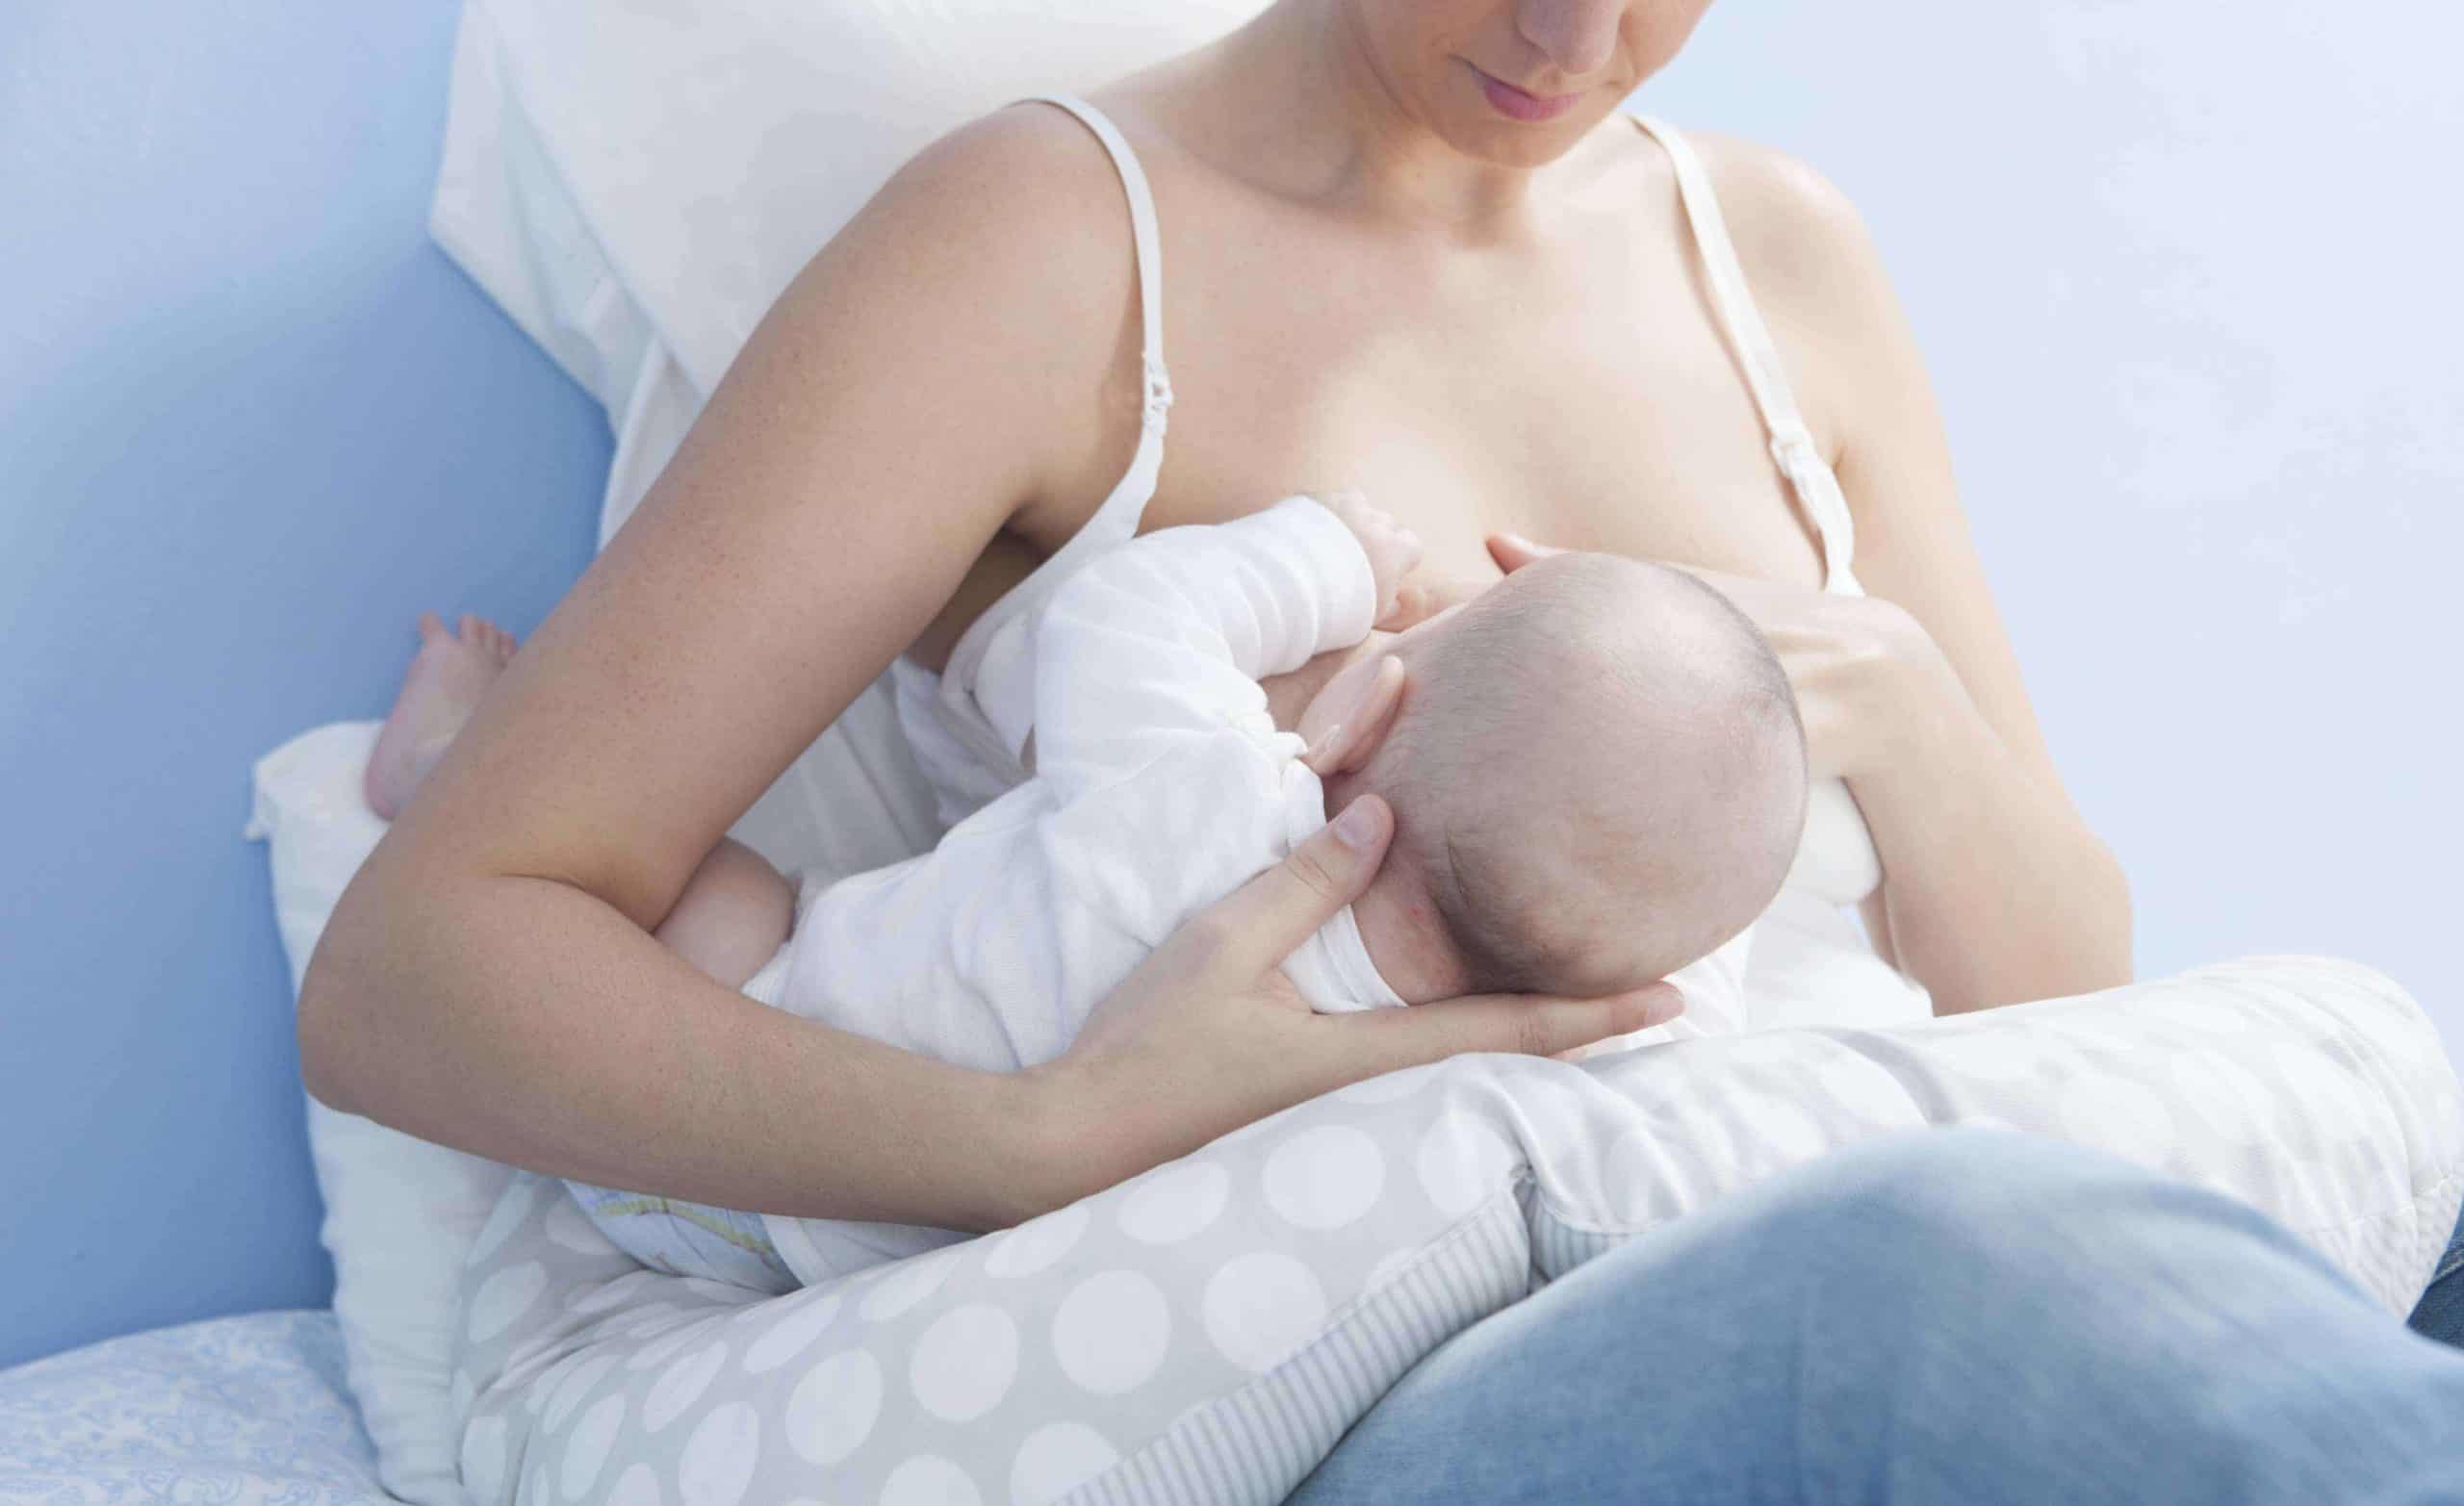 https://www.gentlenursery.com/wp-content/uploads/2017/01/breastfeeding-essentials-checklist-scaled.jpg